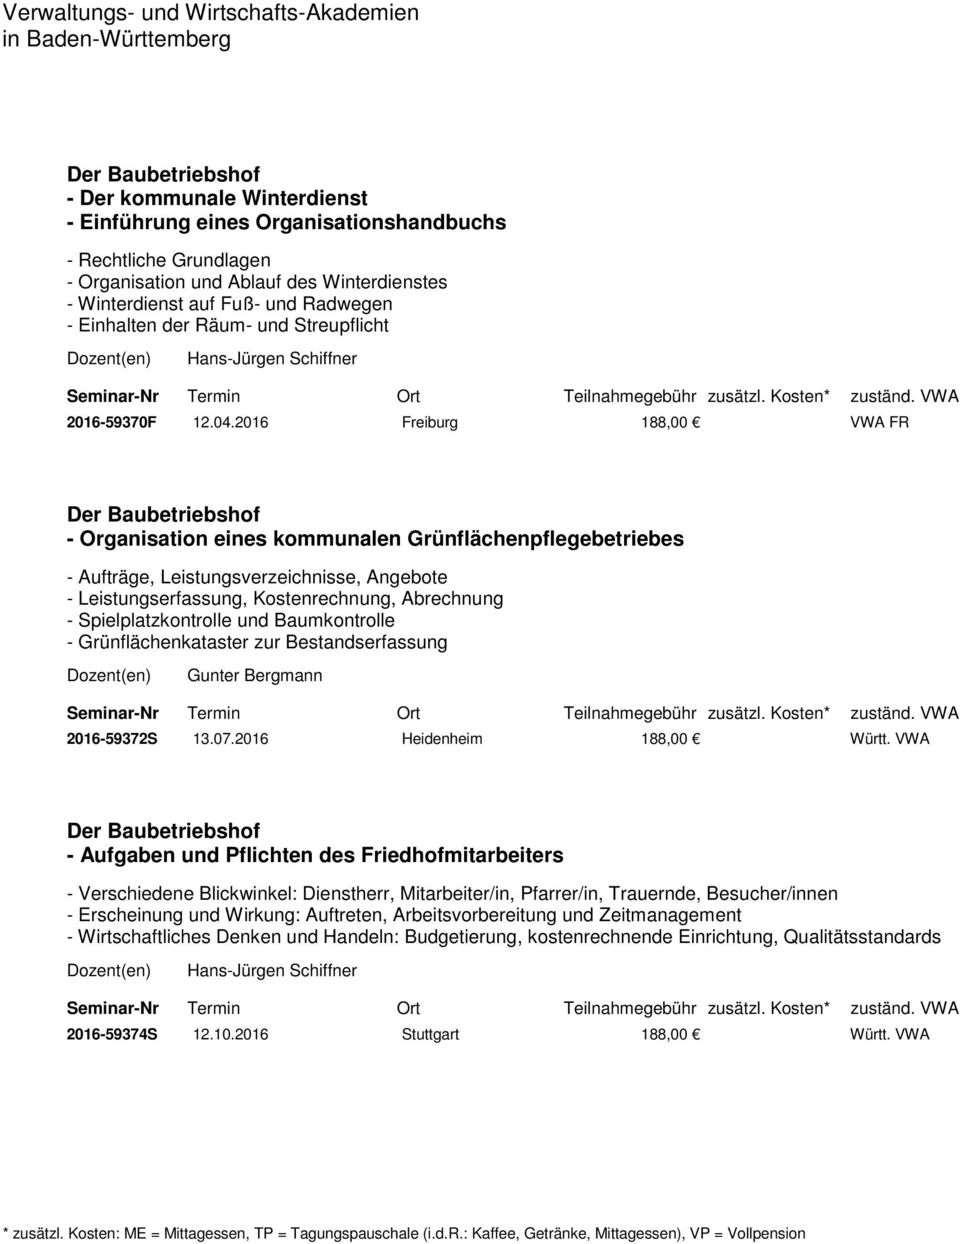 2016 Freiburg 188,00 VWA FR - Organisation eines kommunalen Grünflächenpflegebetriebes - Aufträge, Leistungsverzeichnisse, Angebote - Leistungserfassung, Kostenrechnung, Abrechnung -